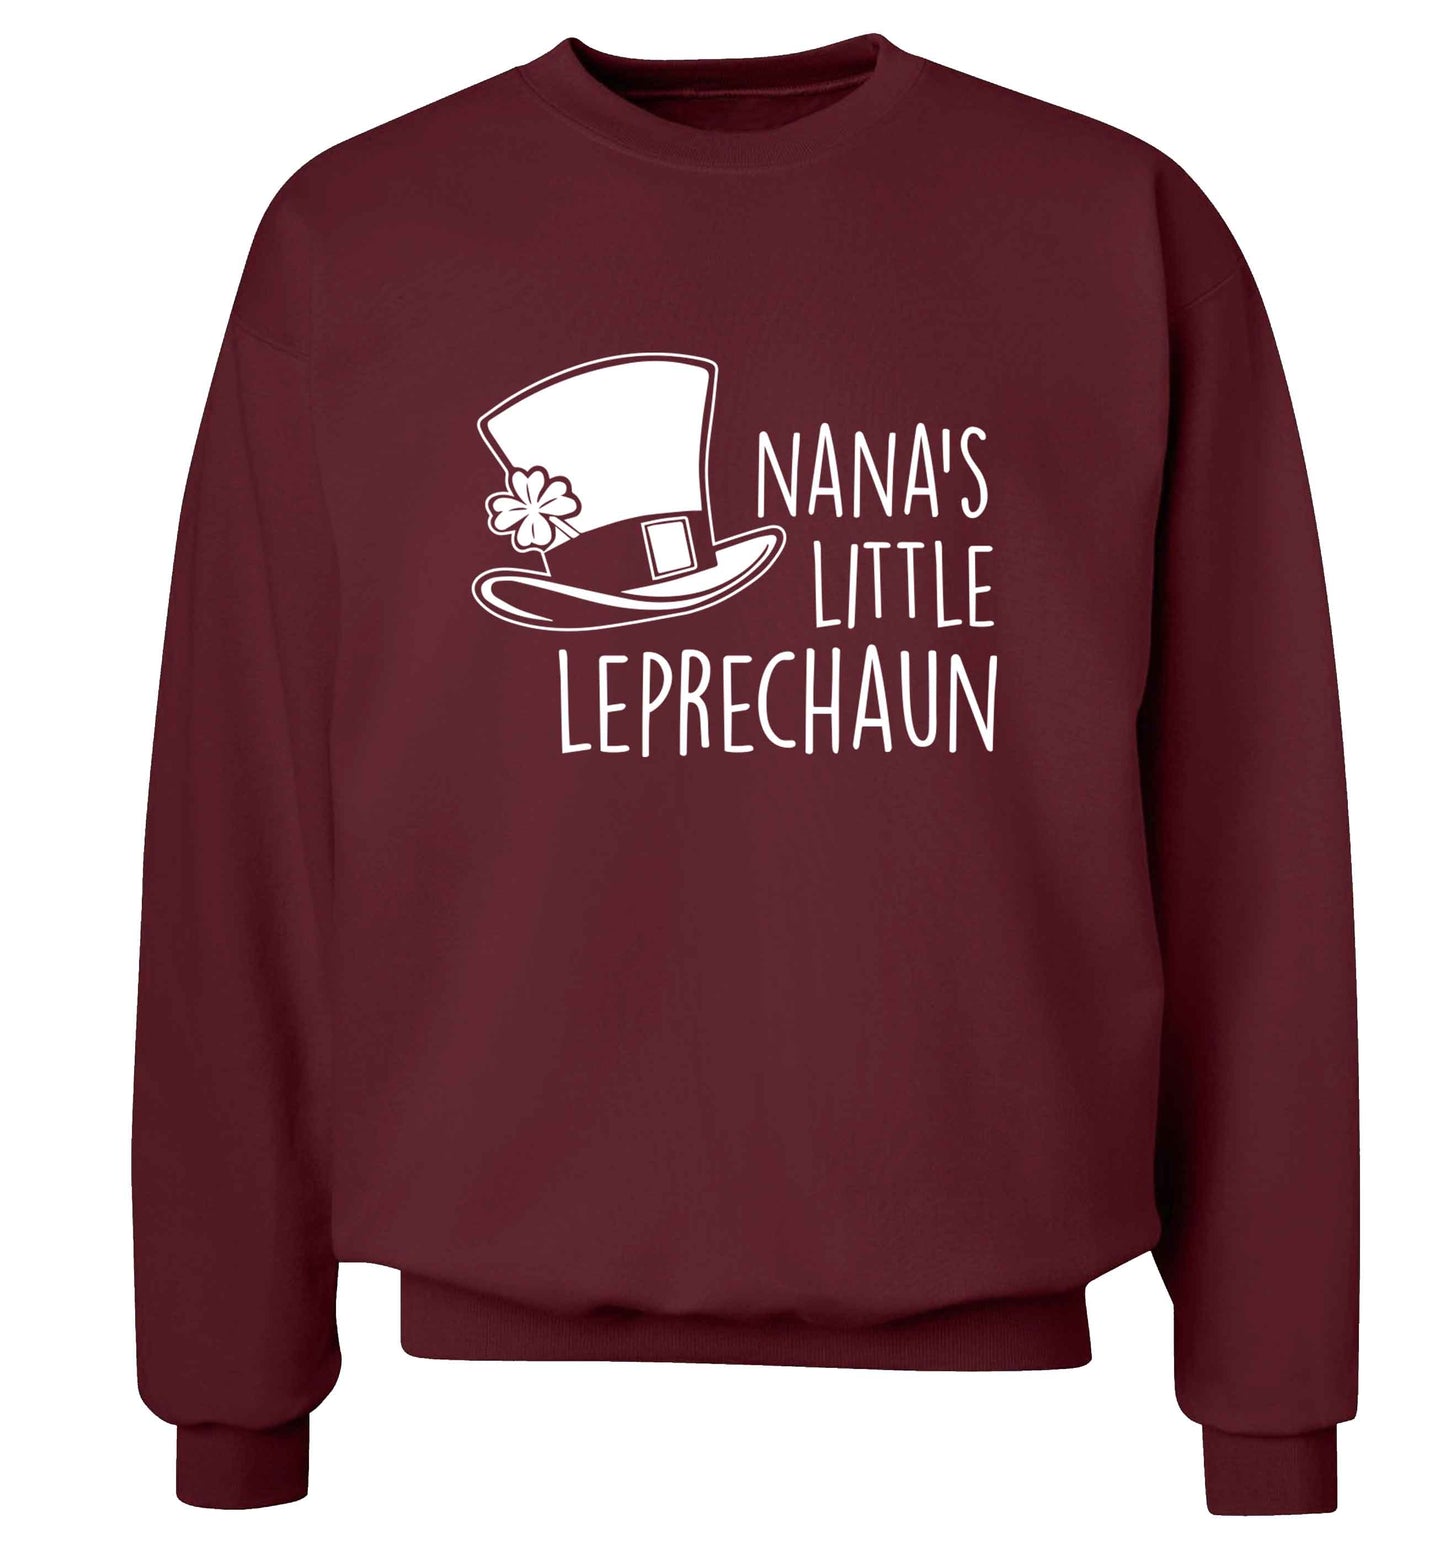 Nana's little leprechaun adult's unisex maroon sweater 2XL